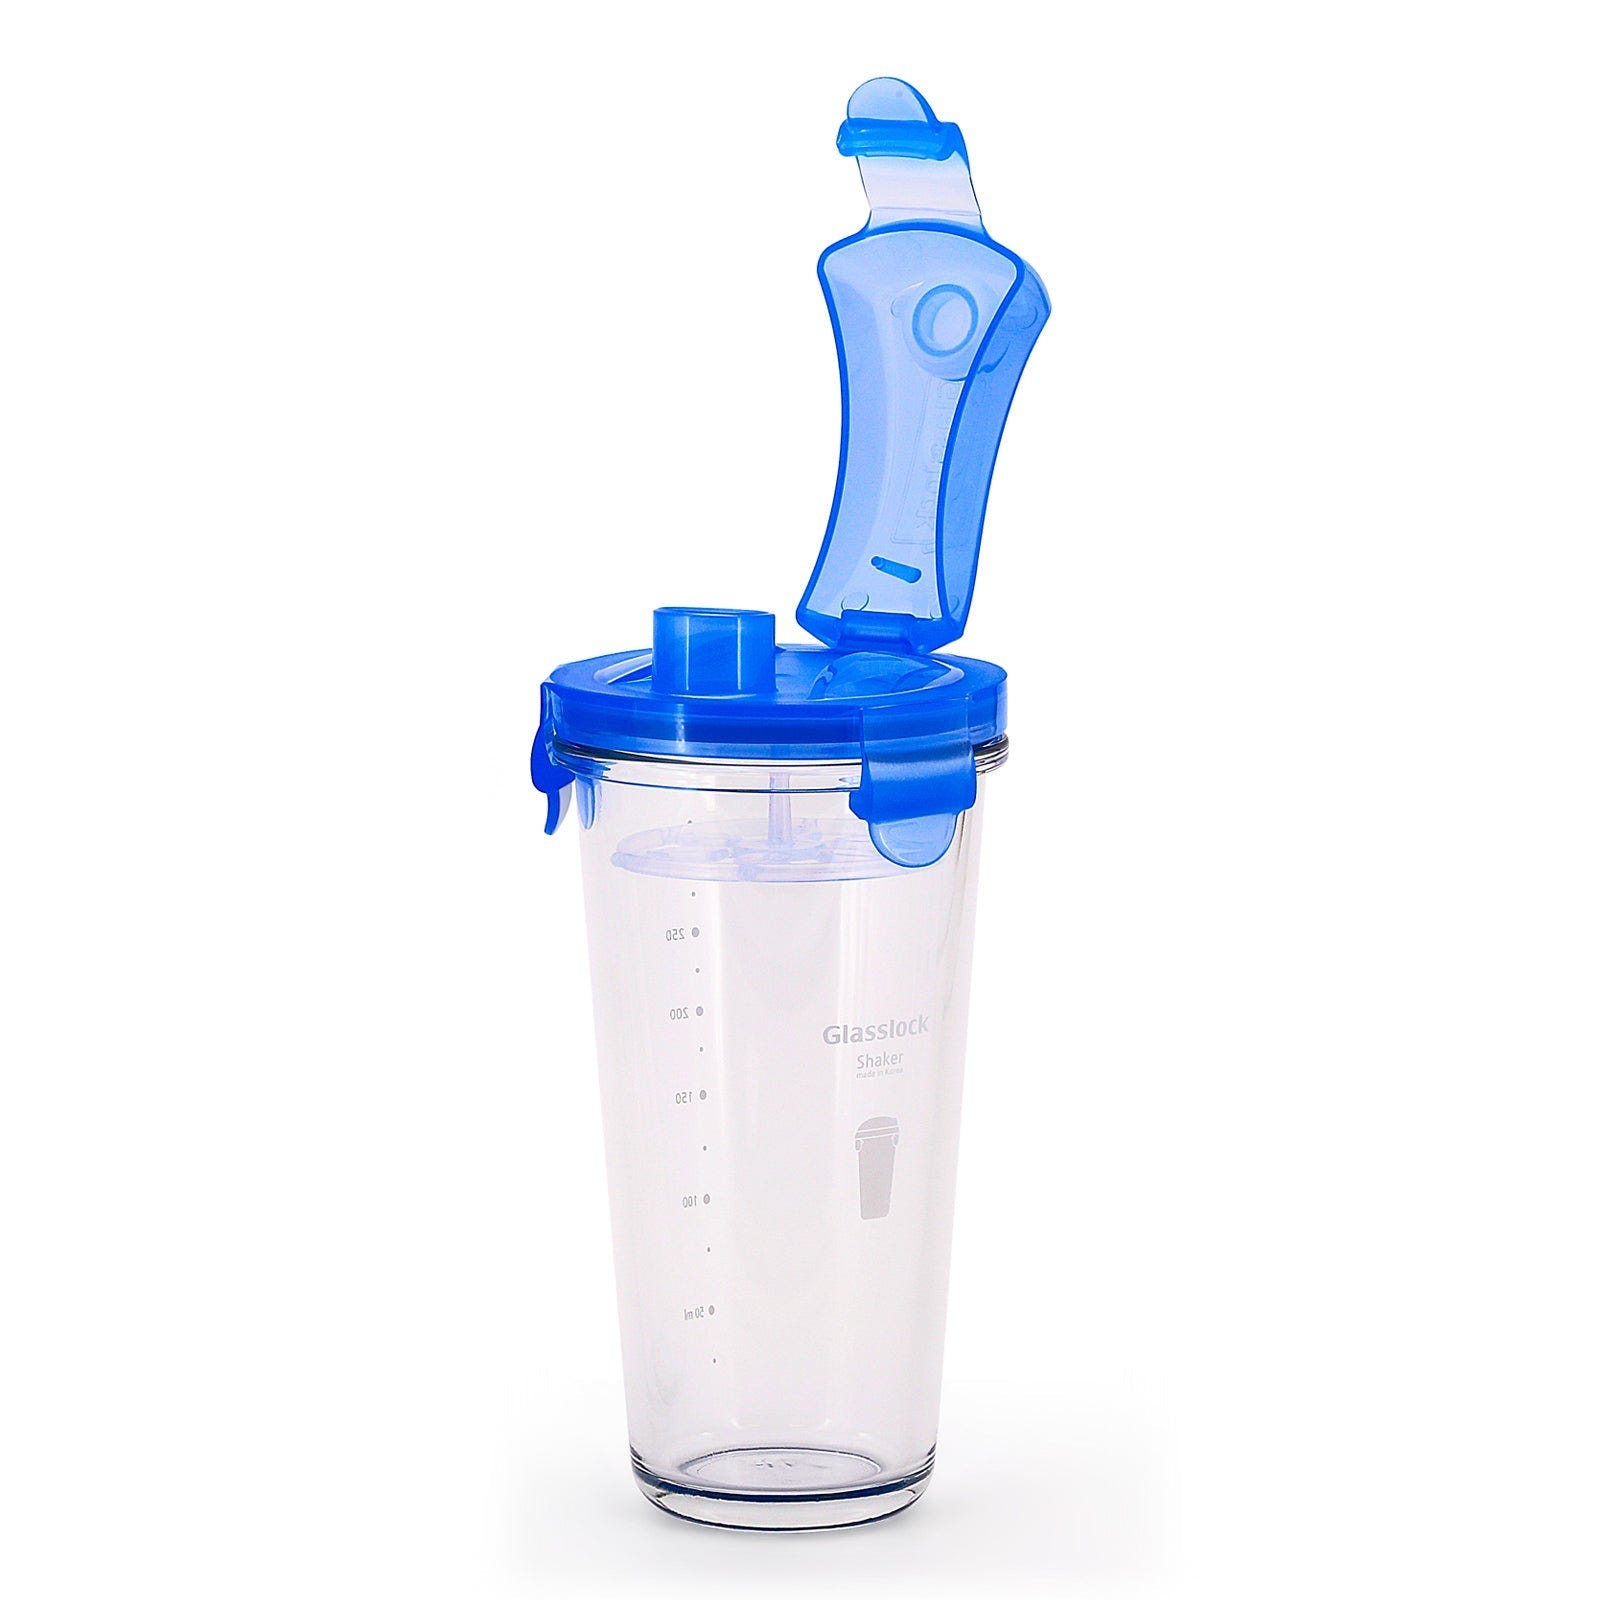 Glasslock Shaker - Vaso Mezclador de 450 ml en Vidrio Templado con Tapa.  Azul | Leroy Merlin